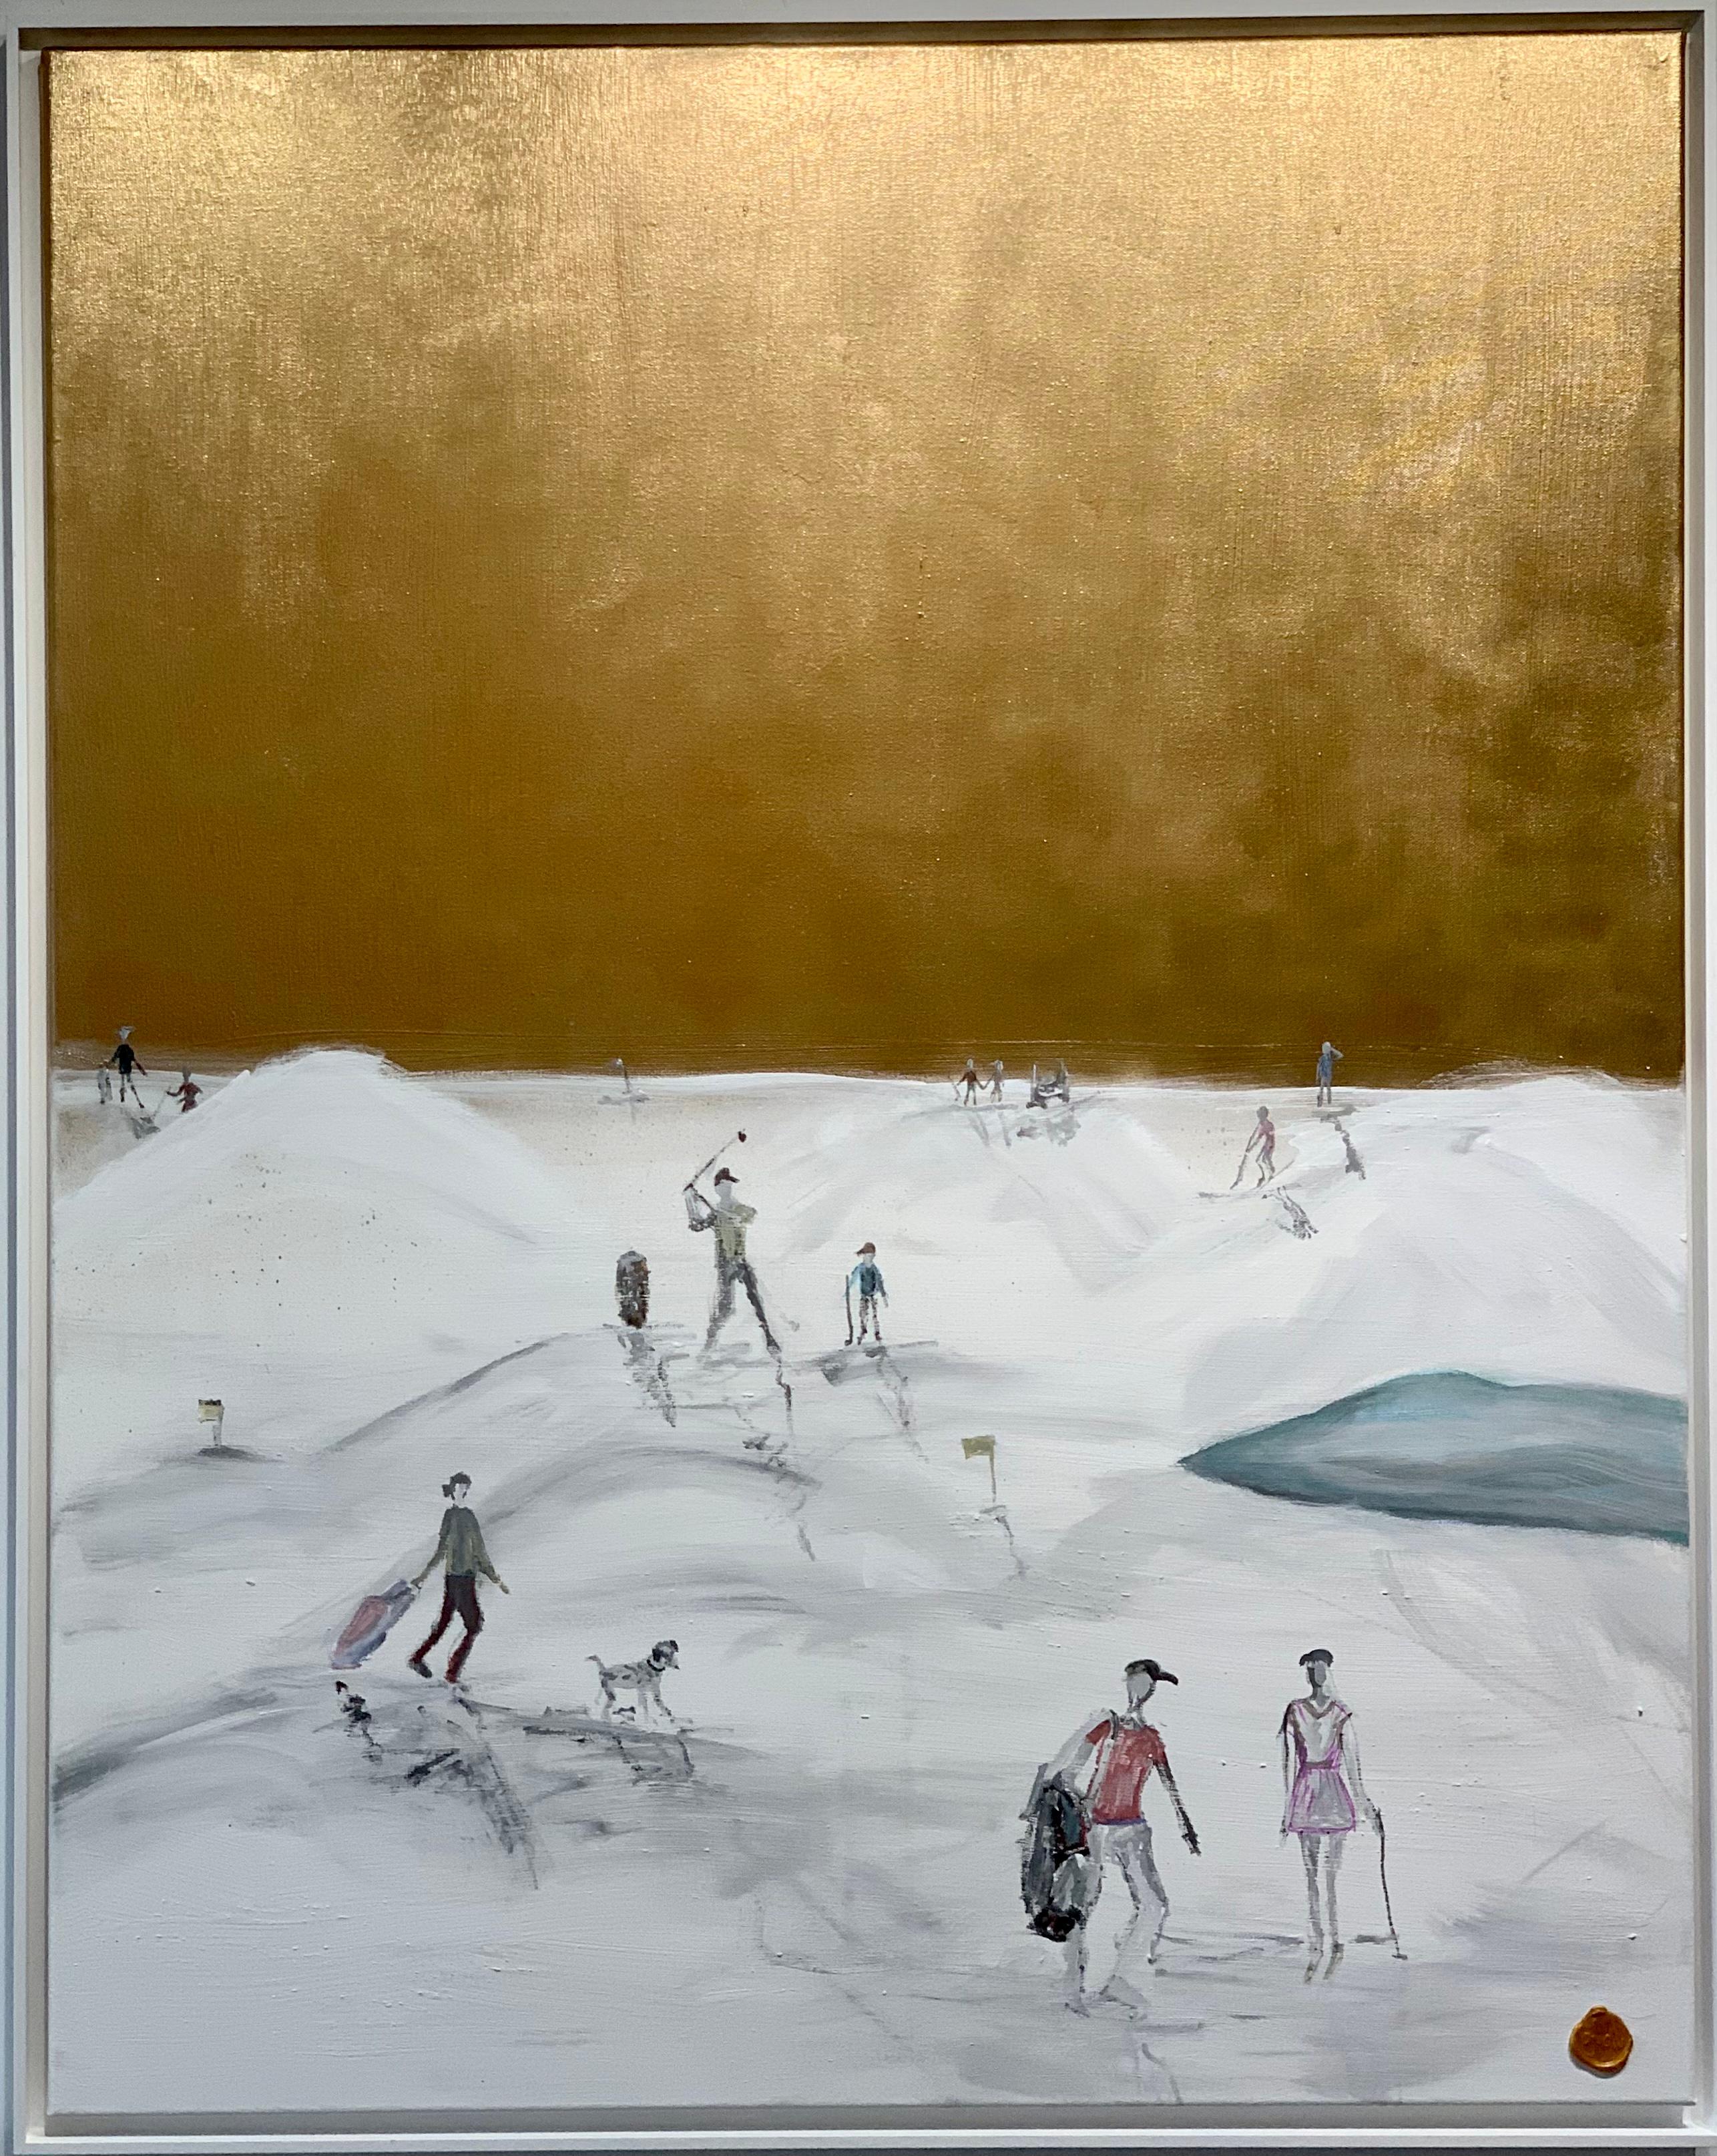 Katharina Hormel malt minimalistische Alltagsszenen des Lebens. Die Menschen, die sie porträtiert, sind in ihrem Alltag unterwegs, gehen im Park spazieren, fahren Fahrrad, spielen Fußball usw. In ihrem Werk zeigt die Künstlerin, dass es die kleinen